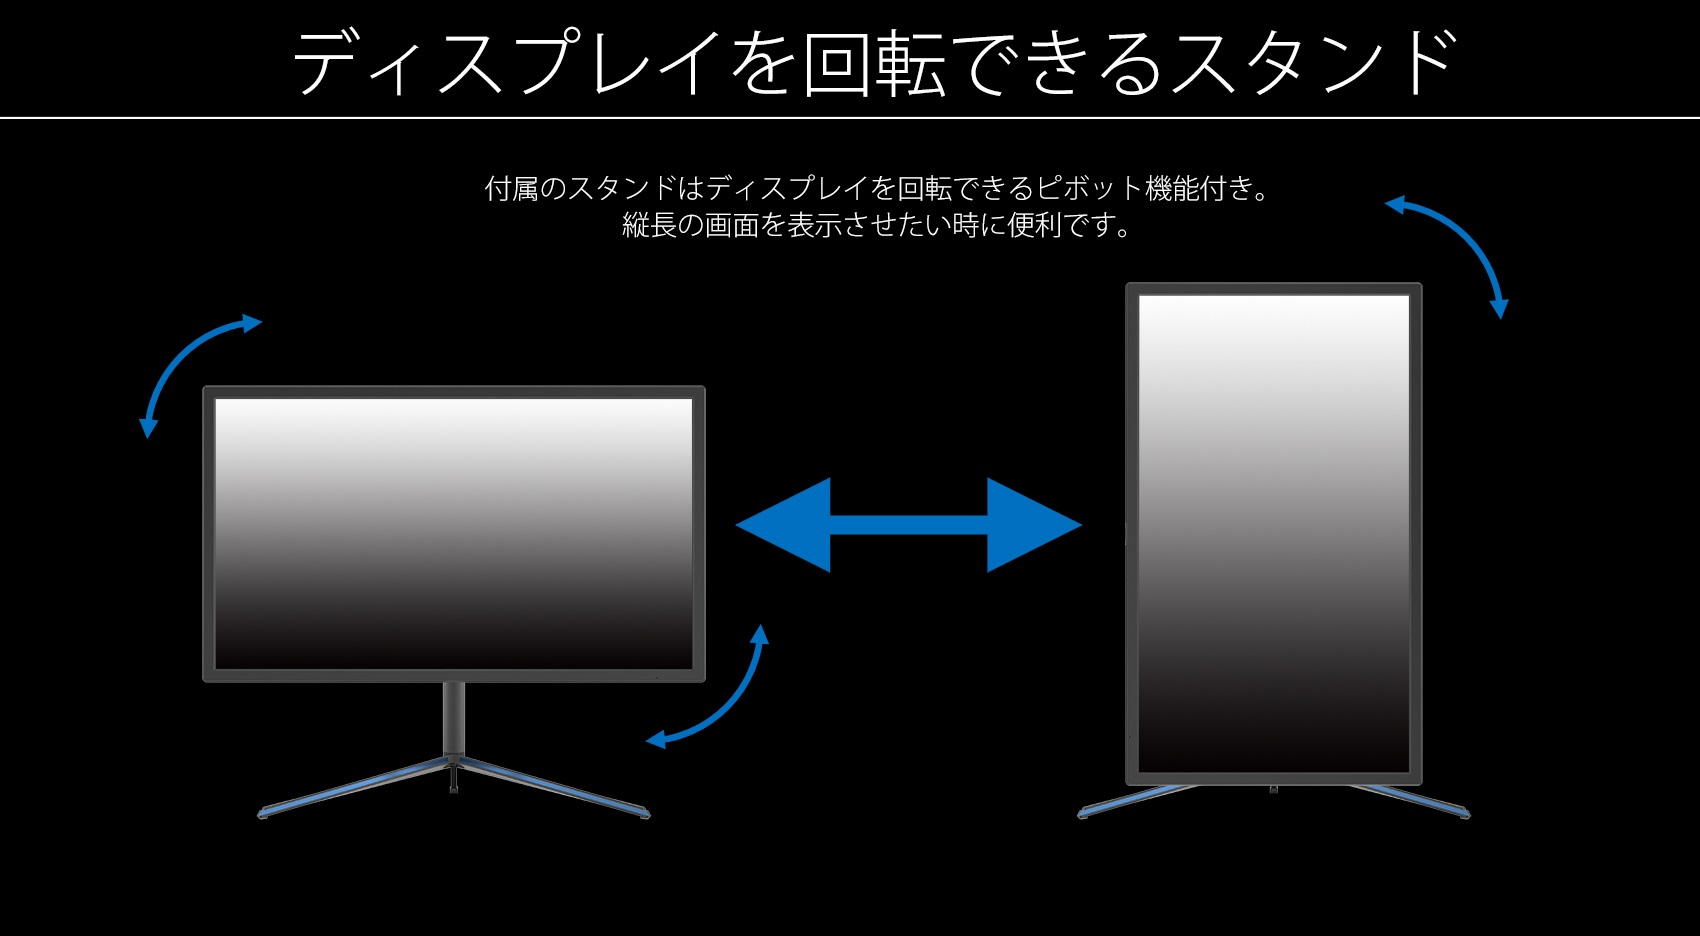 ディスプレイを回転できるスタンド 付属のスタンドはディスプレイを回転できるピボット機能付き。 縦長の画面を表示させたい時に便利です。